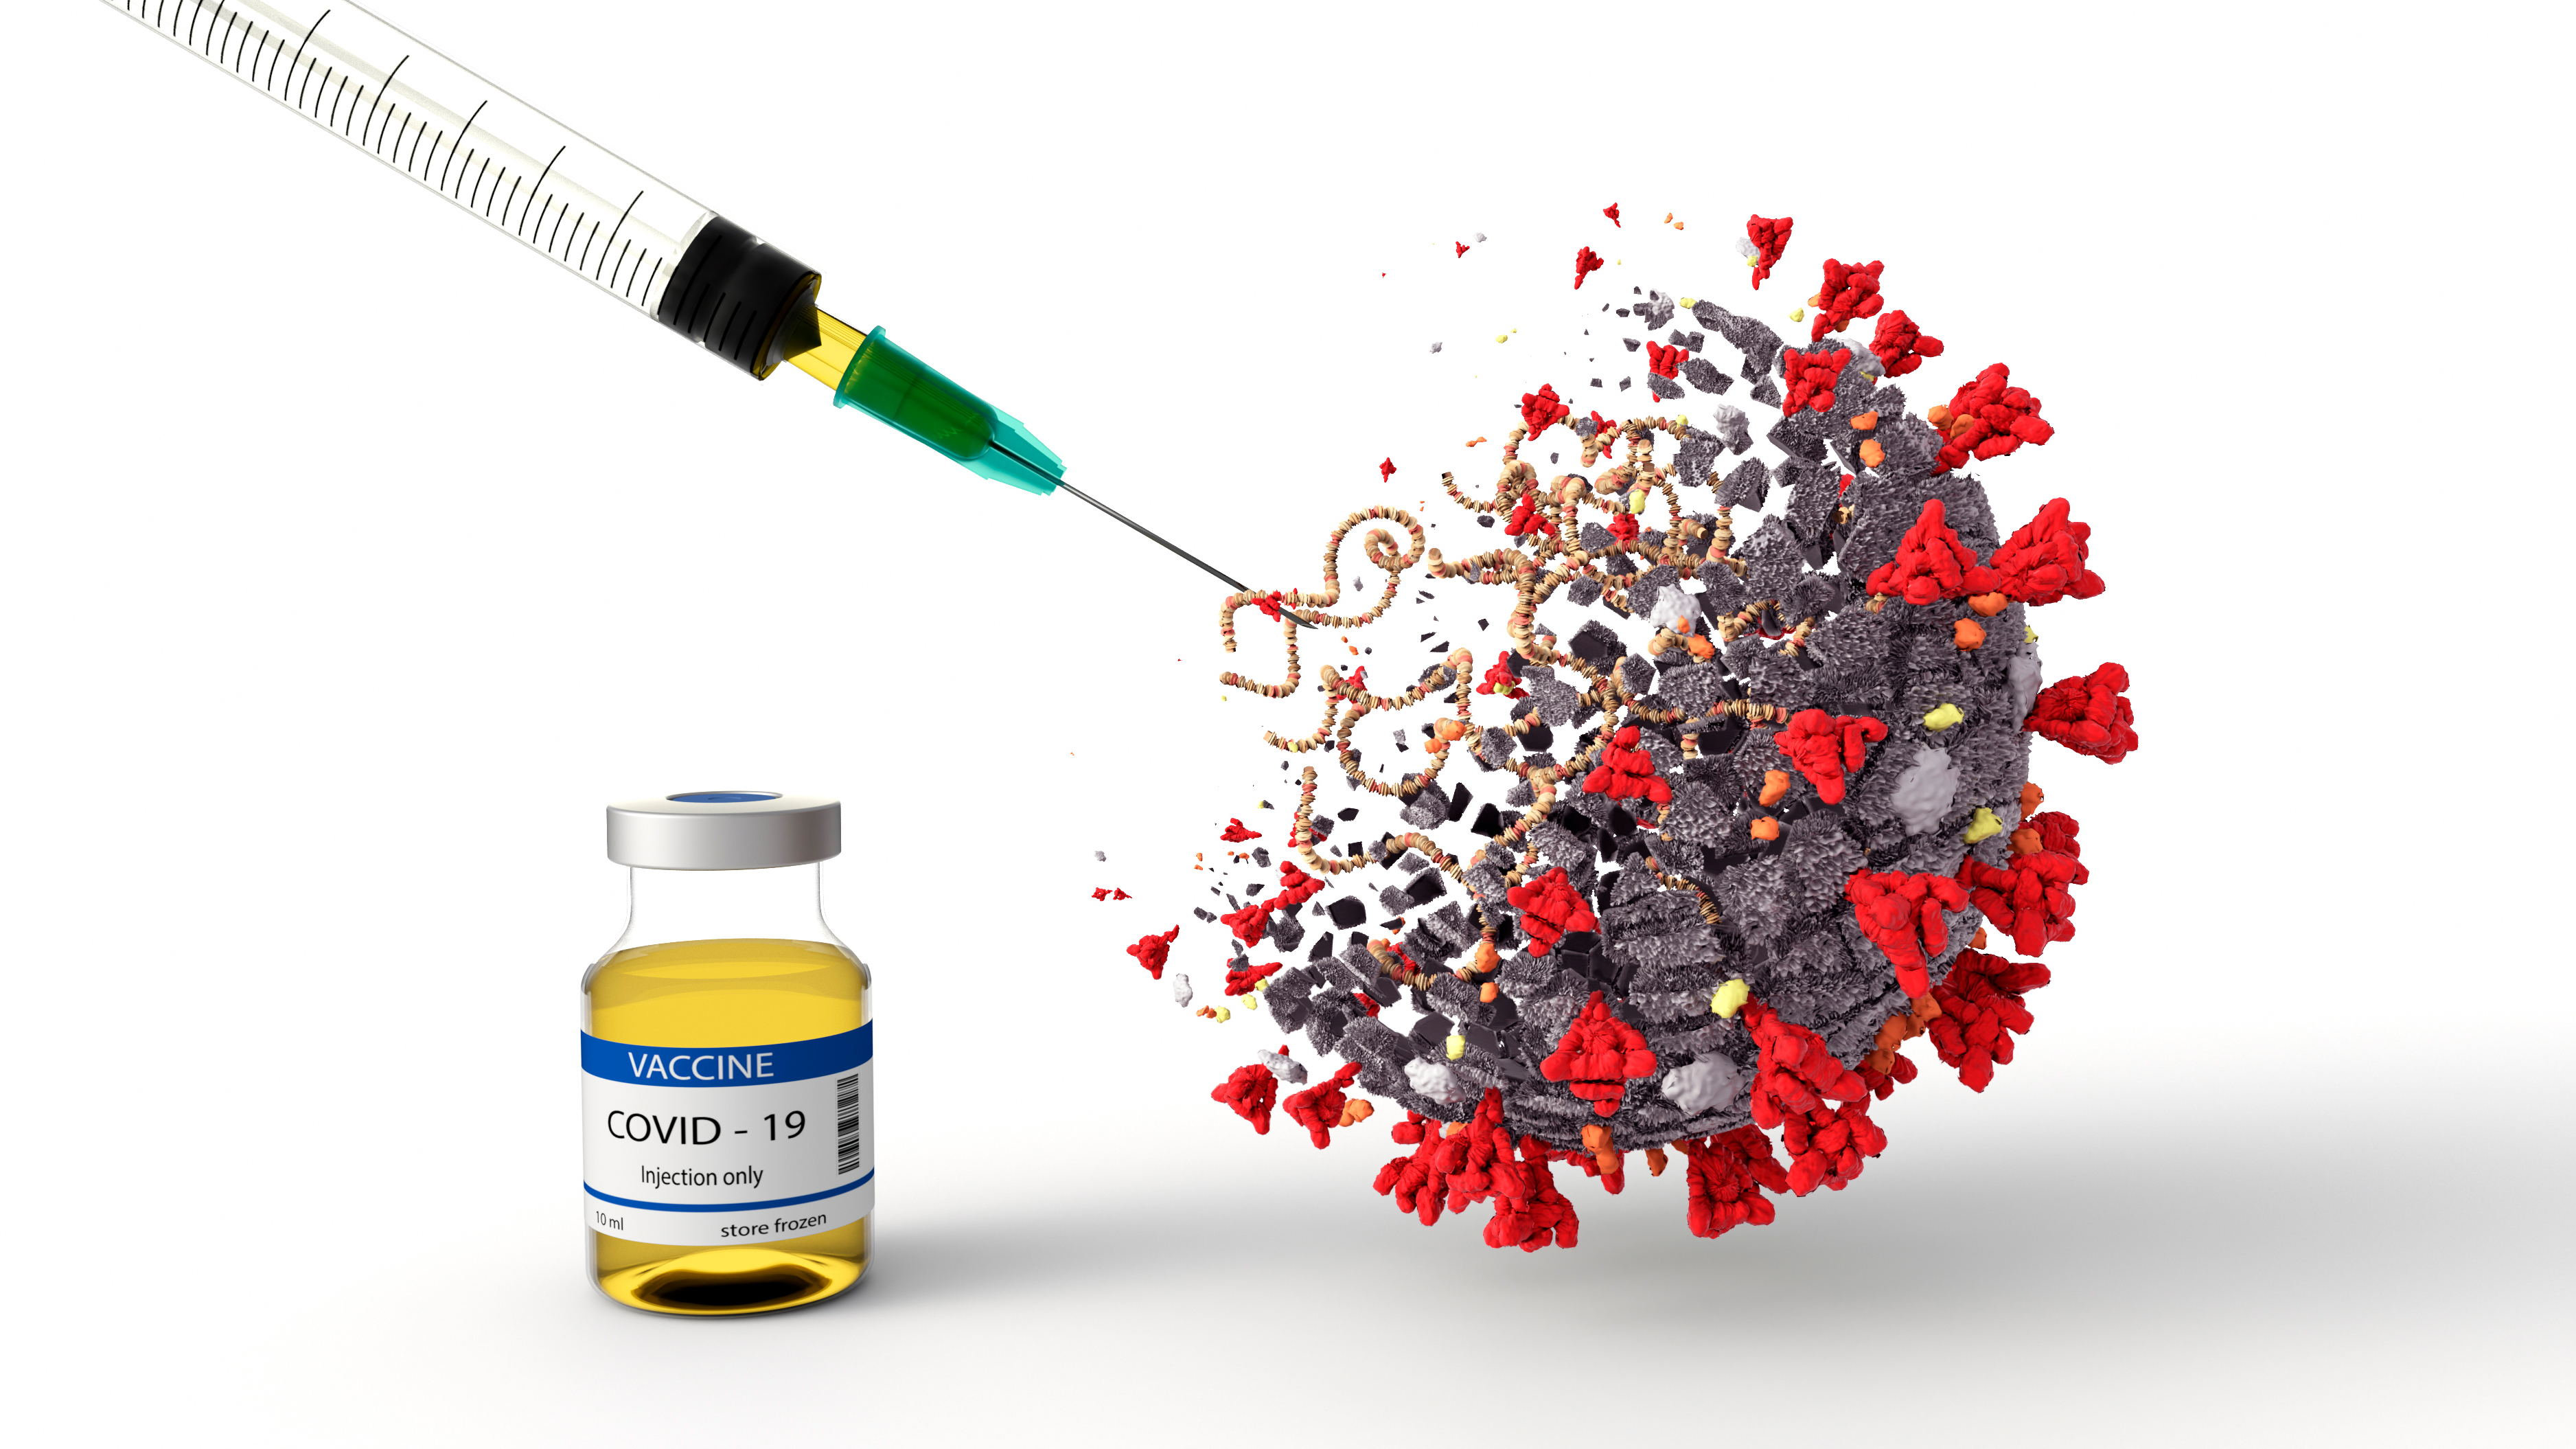 La nueva cepa derivada del visón podría alterar la eficacia de la vacuna contra el COVID-19 a futuro, si esta versión del virus SARS-CoV-2 no se controla y se propaga a gran velocidad (Shutterstock)